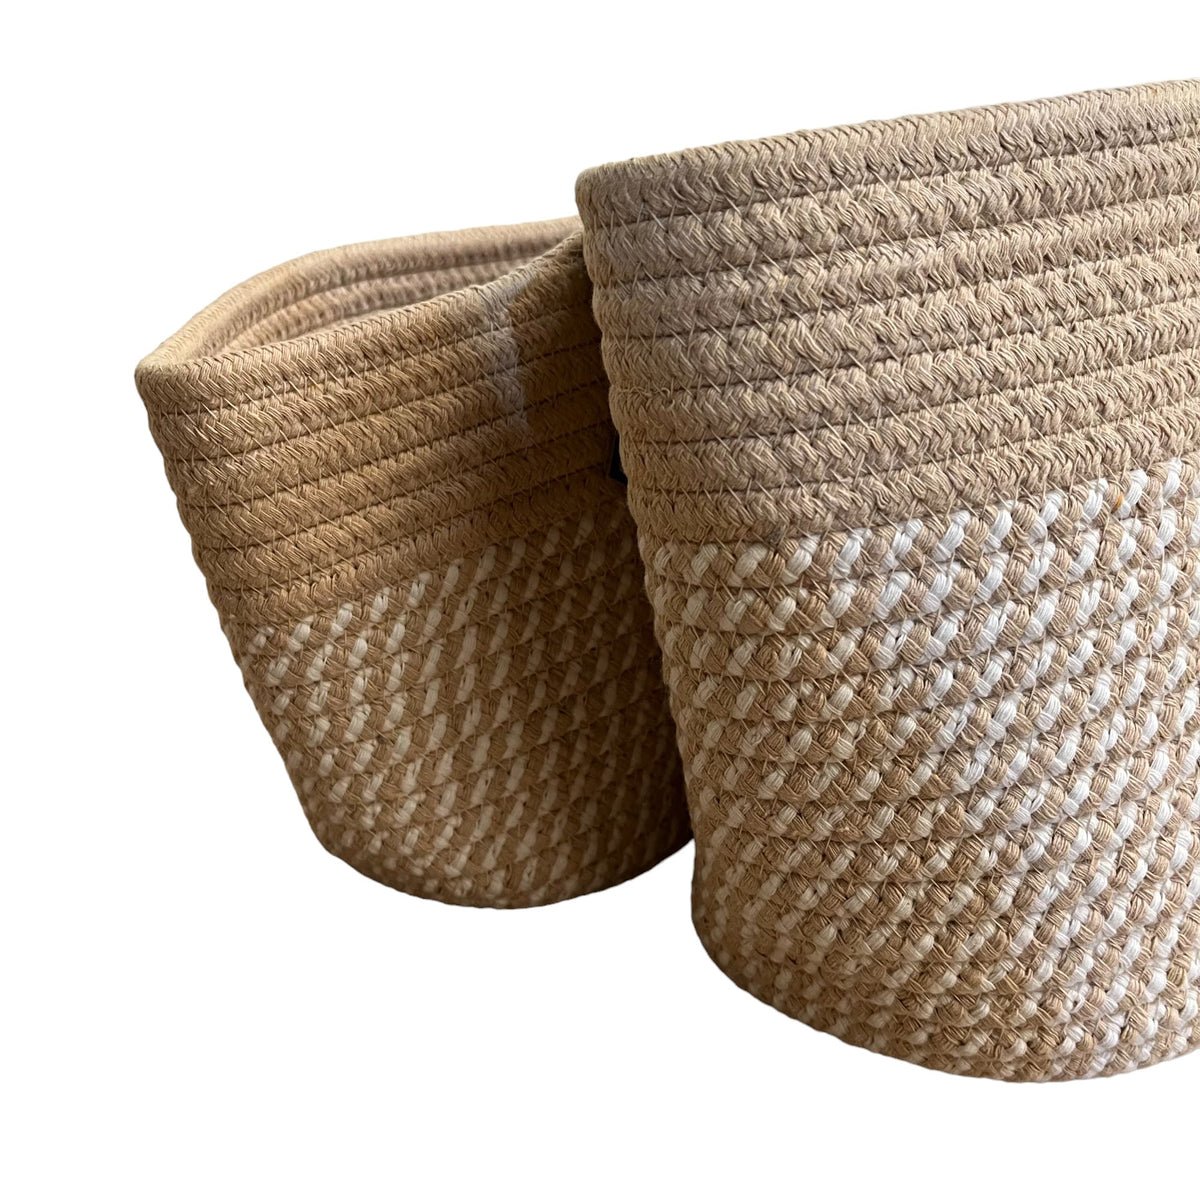 Cotton Rope Round Storage Baskets Set of 2 - Cherish Home